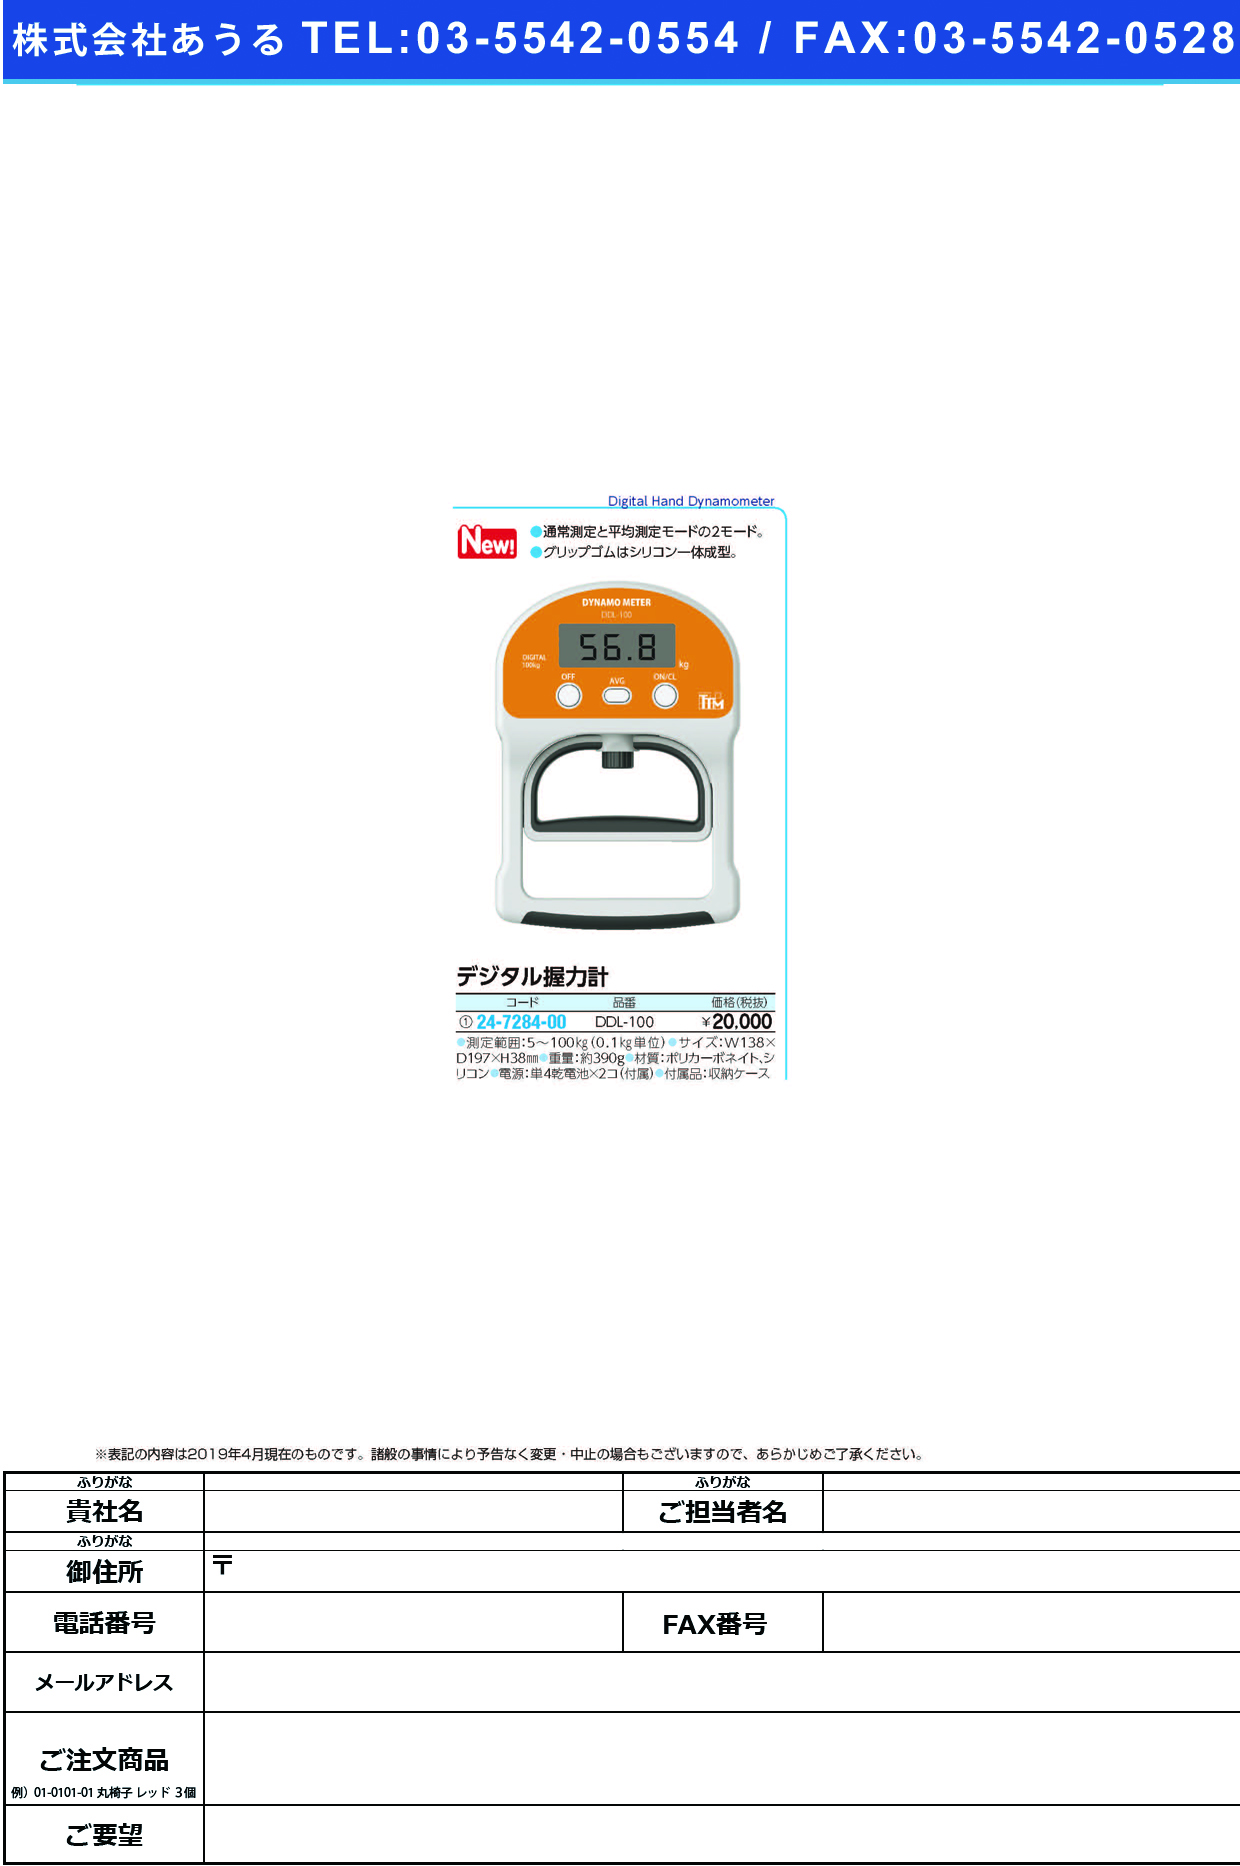 (24-7284-00)デジタル握力計DDL-100 ﾃﾞｼﾞﾀﾙｱｸﾘｮｸｹｲ(ツツミ)【1台単位】【2019年カタログ商品】 | マイスコ